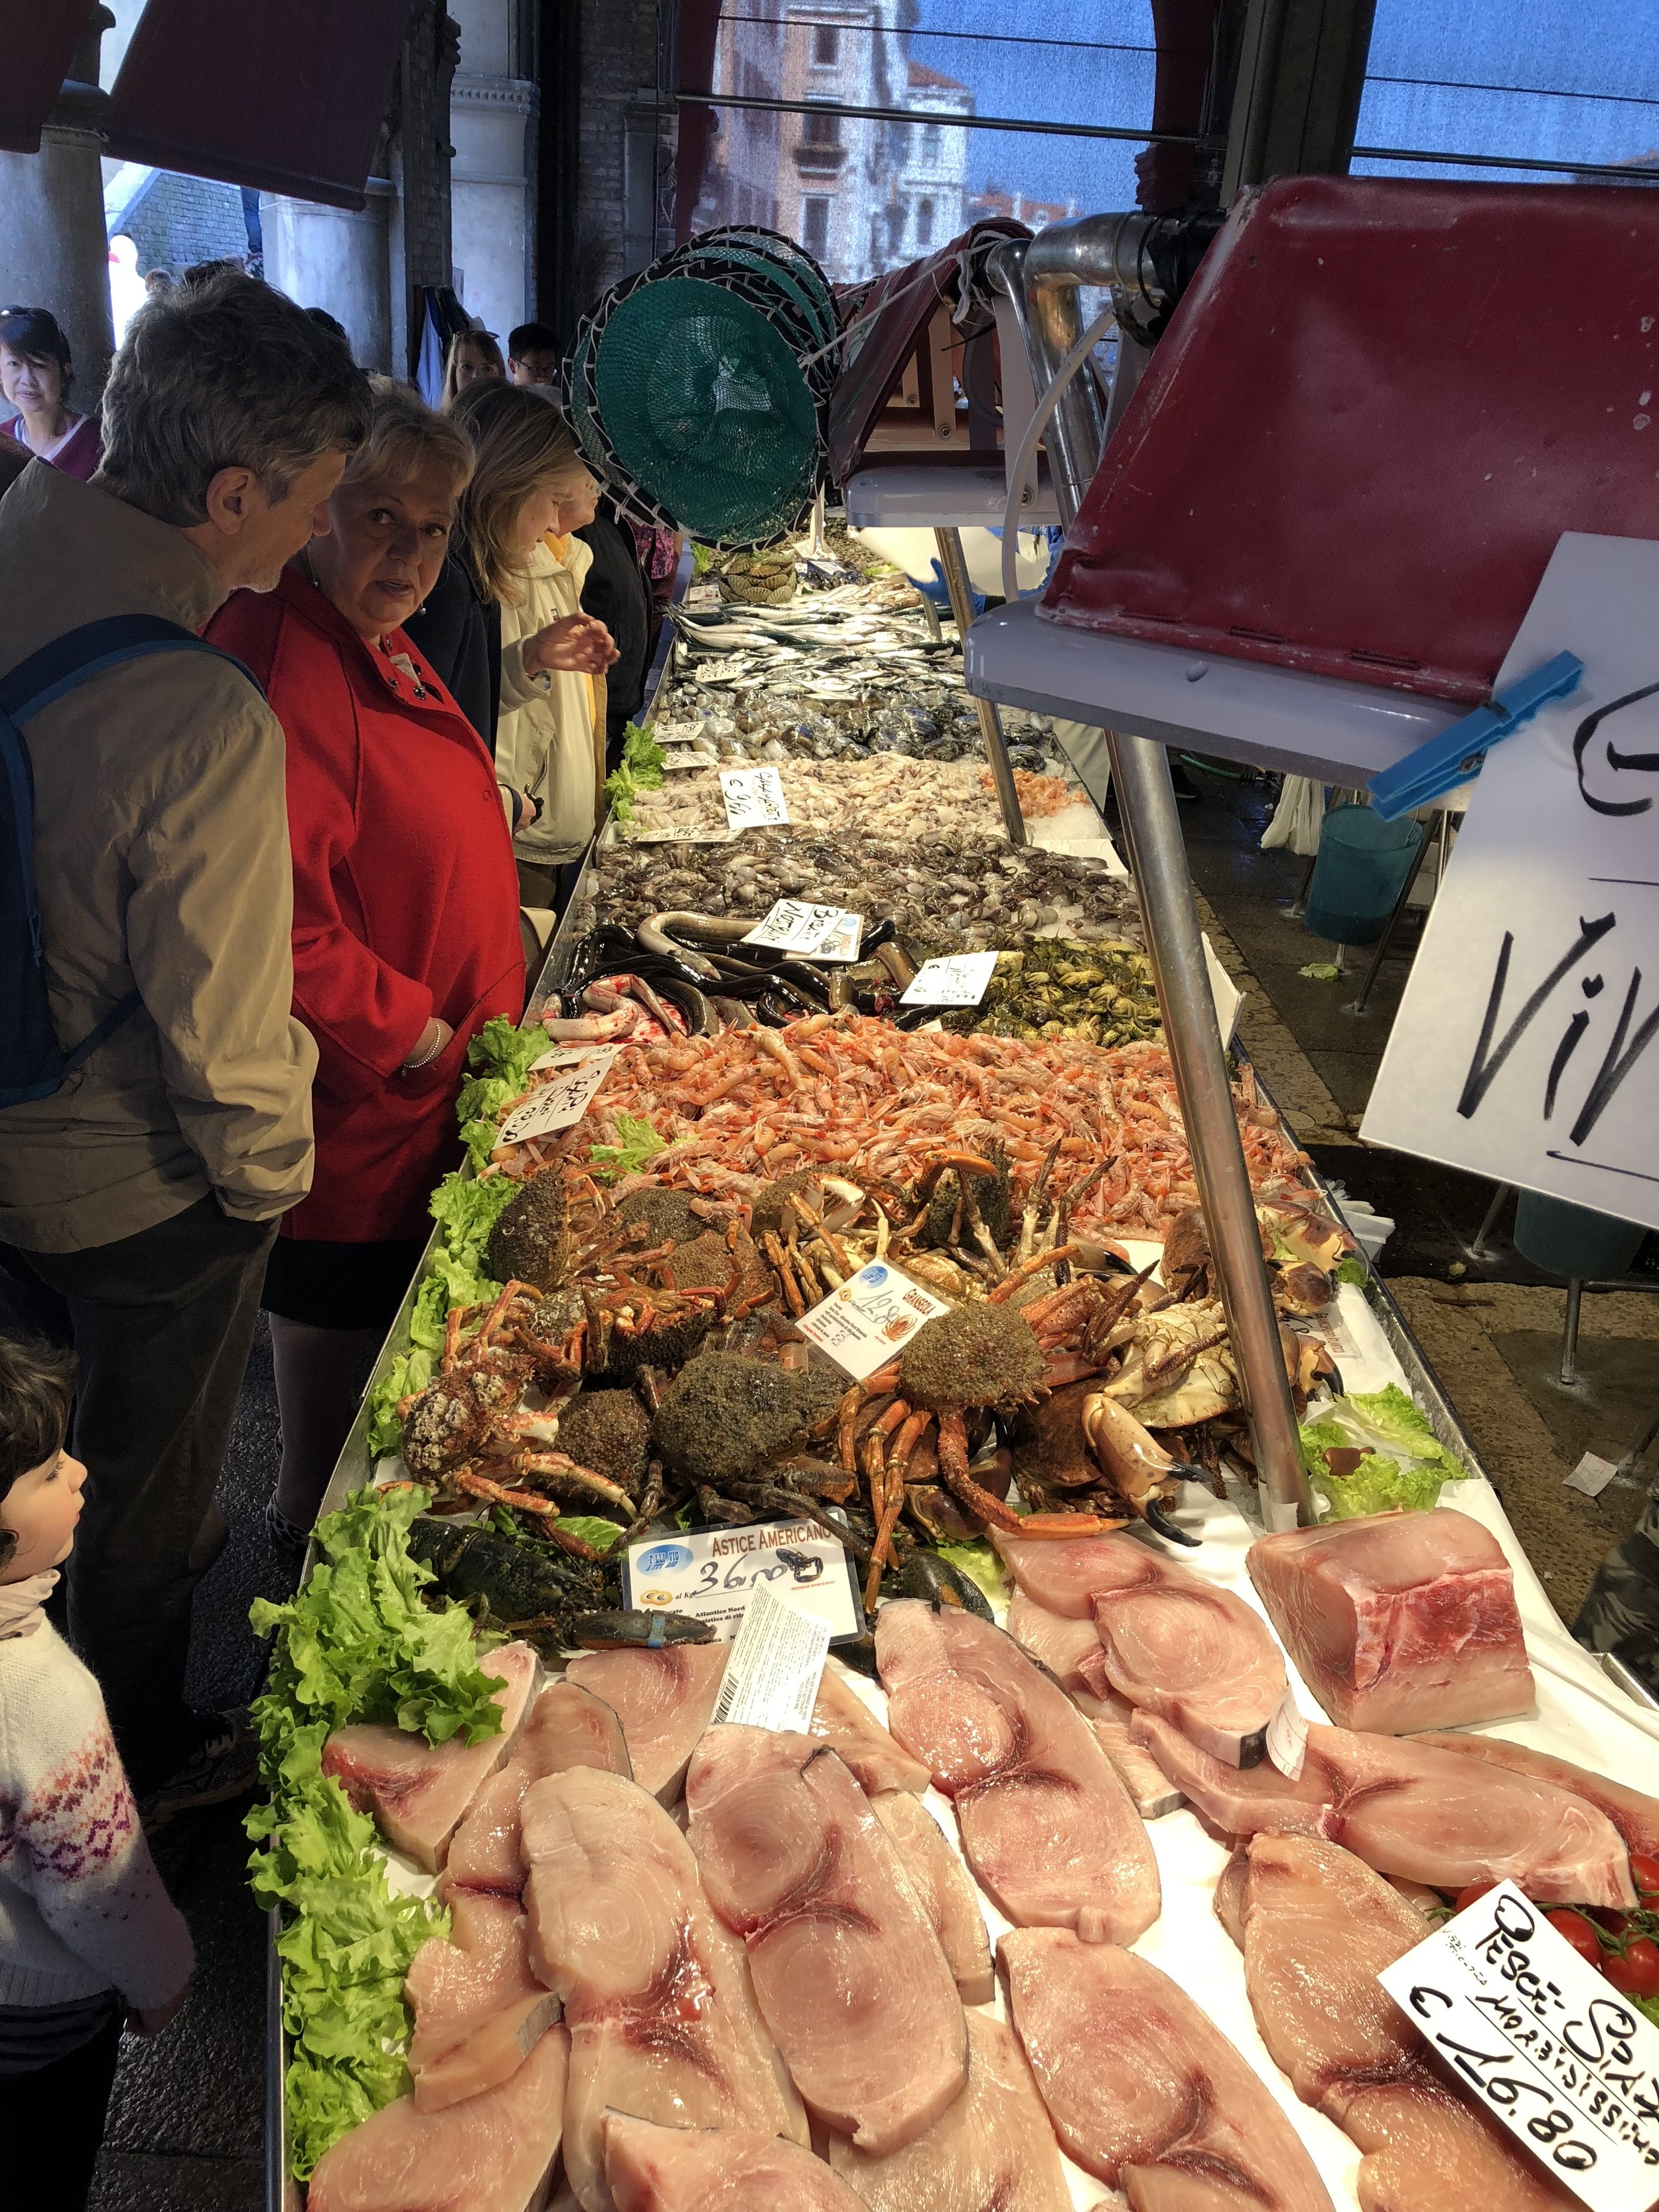  Fresh seafood at Rialto Market   Photos courtesy Molly Watanabe  